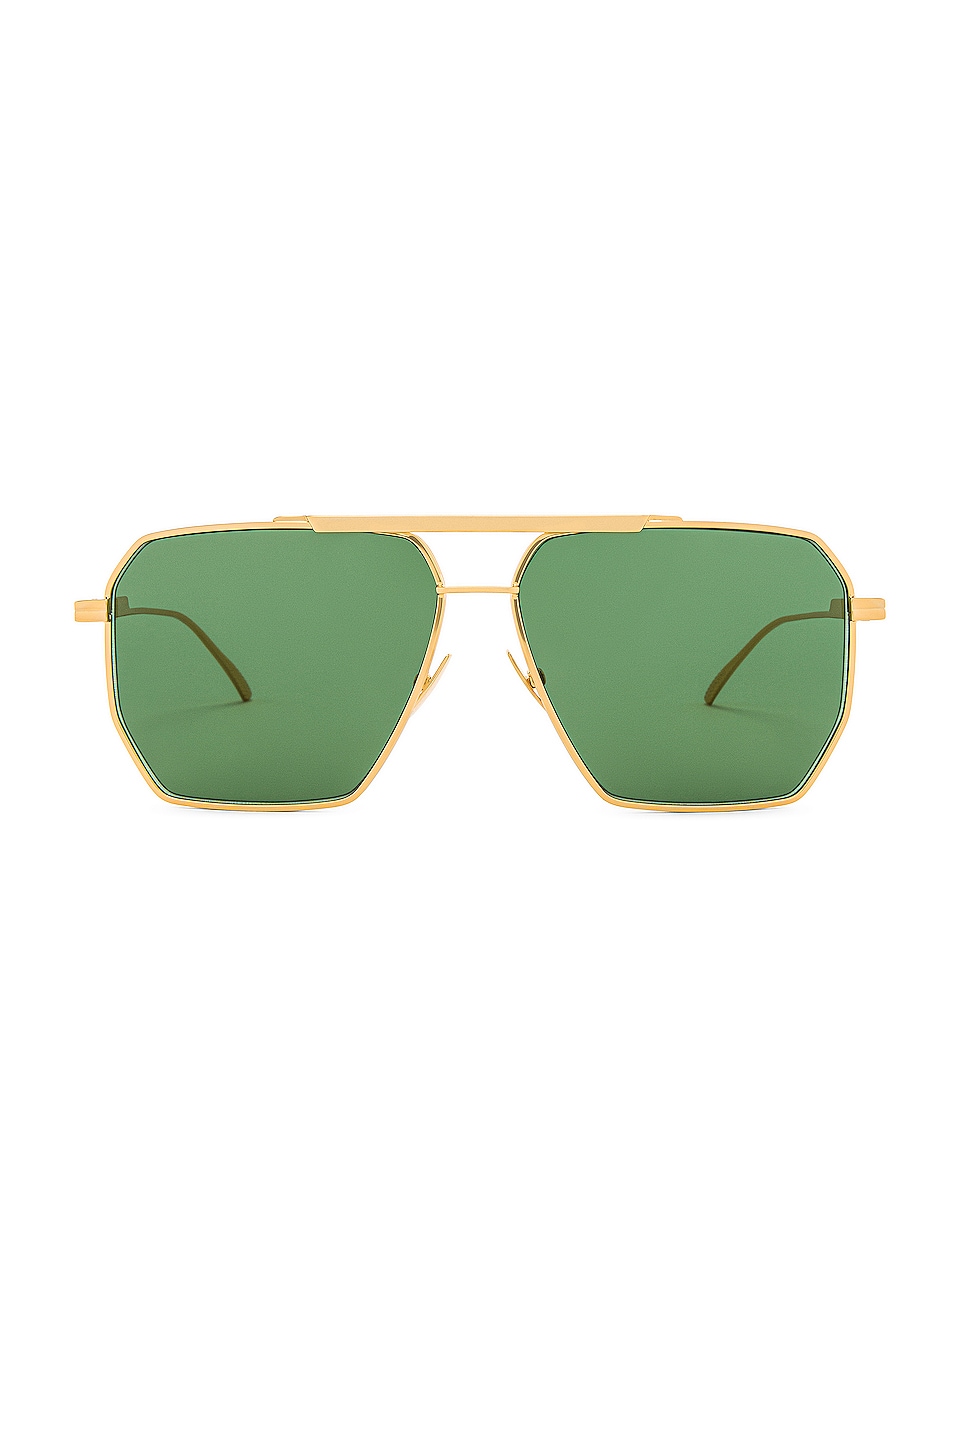 Bottega Veneta Light Ribbon Pilot Sunglasses in Shiny Gold & Green ...